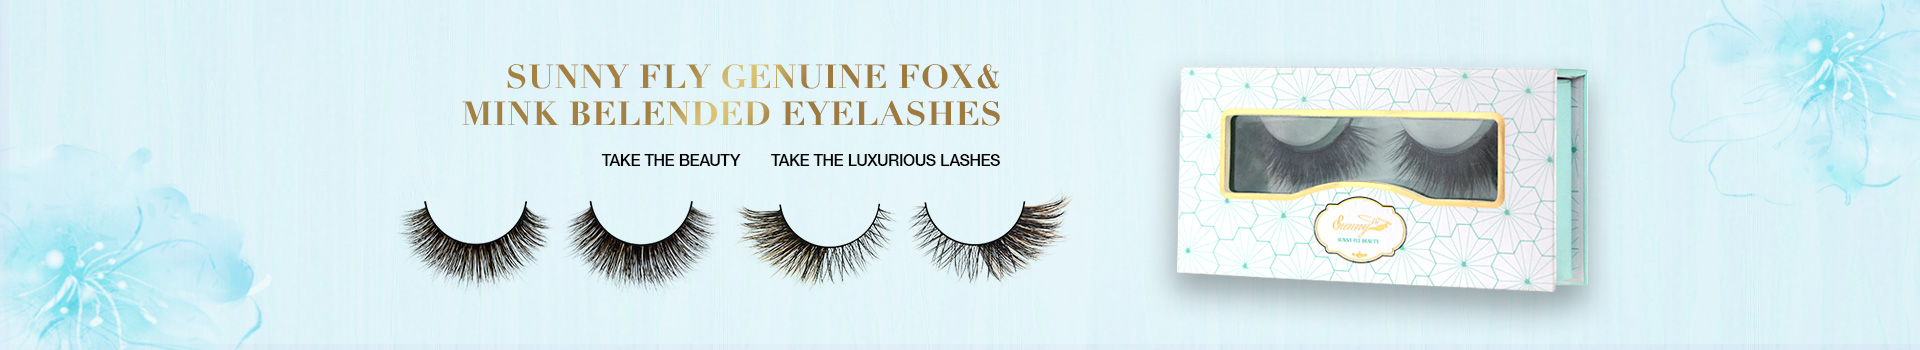 Fox & Mink Fur Blended Eyelashes FMB13